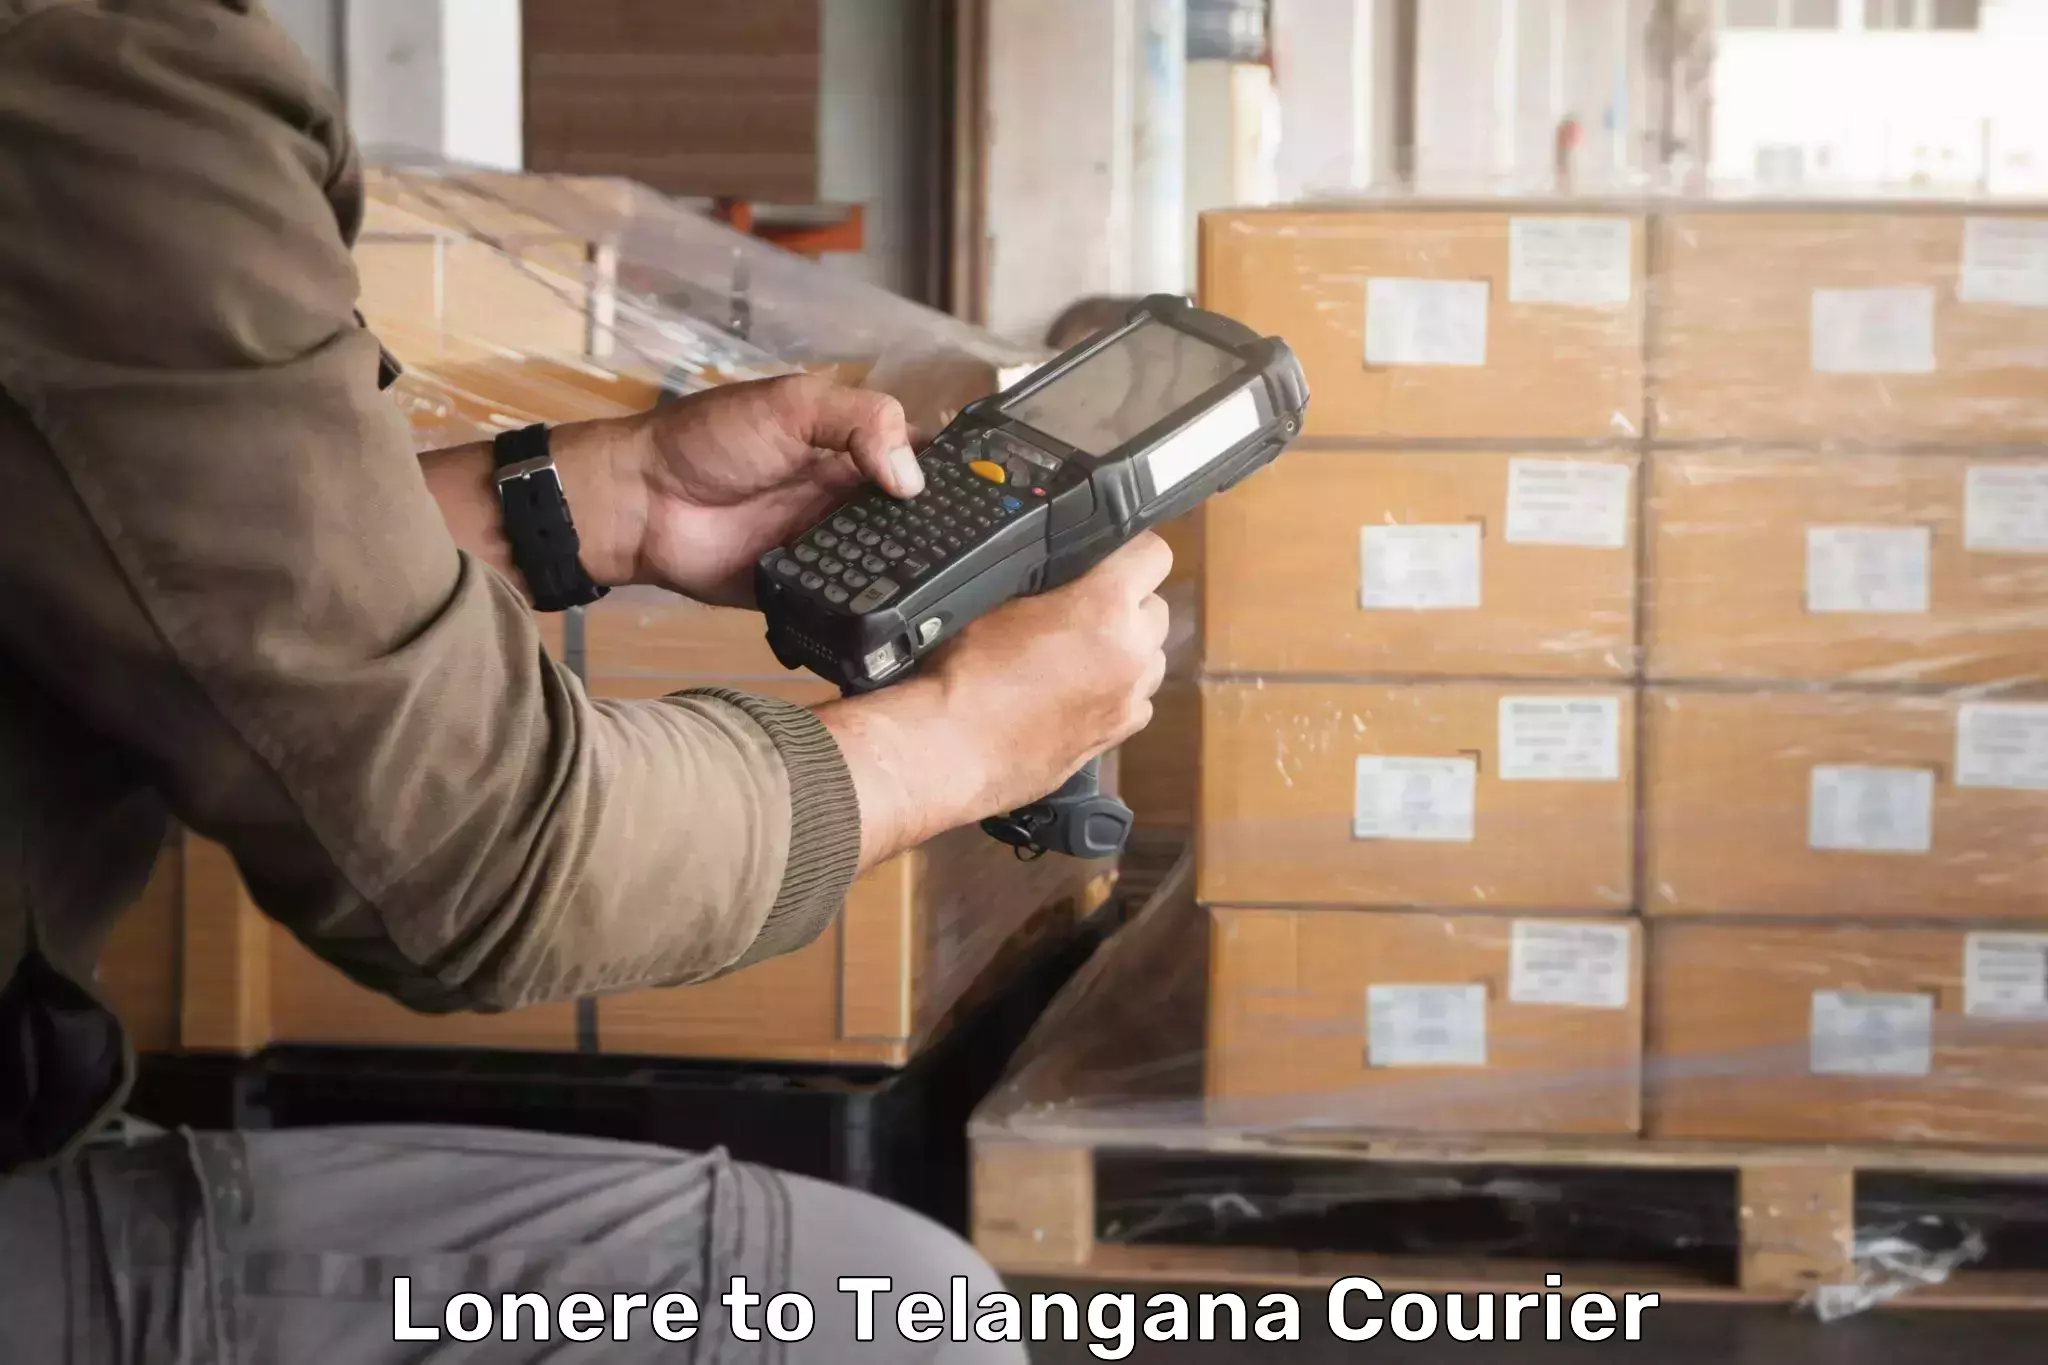 Cargo delivery service Lonere to Sikanderguda